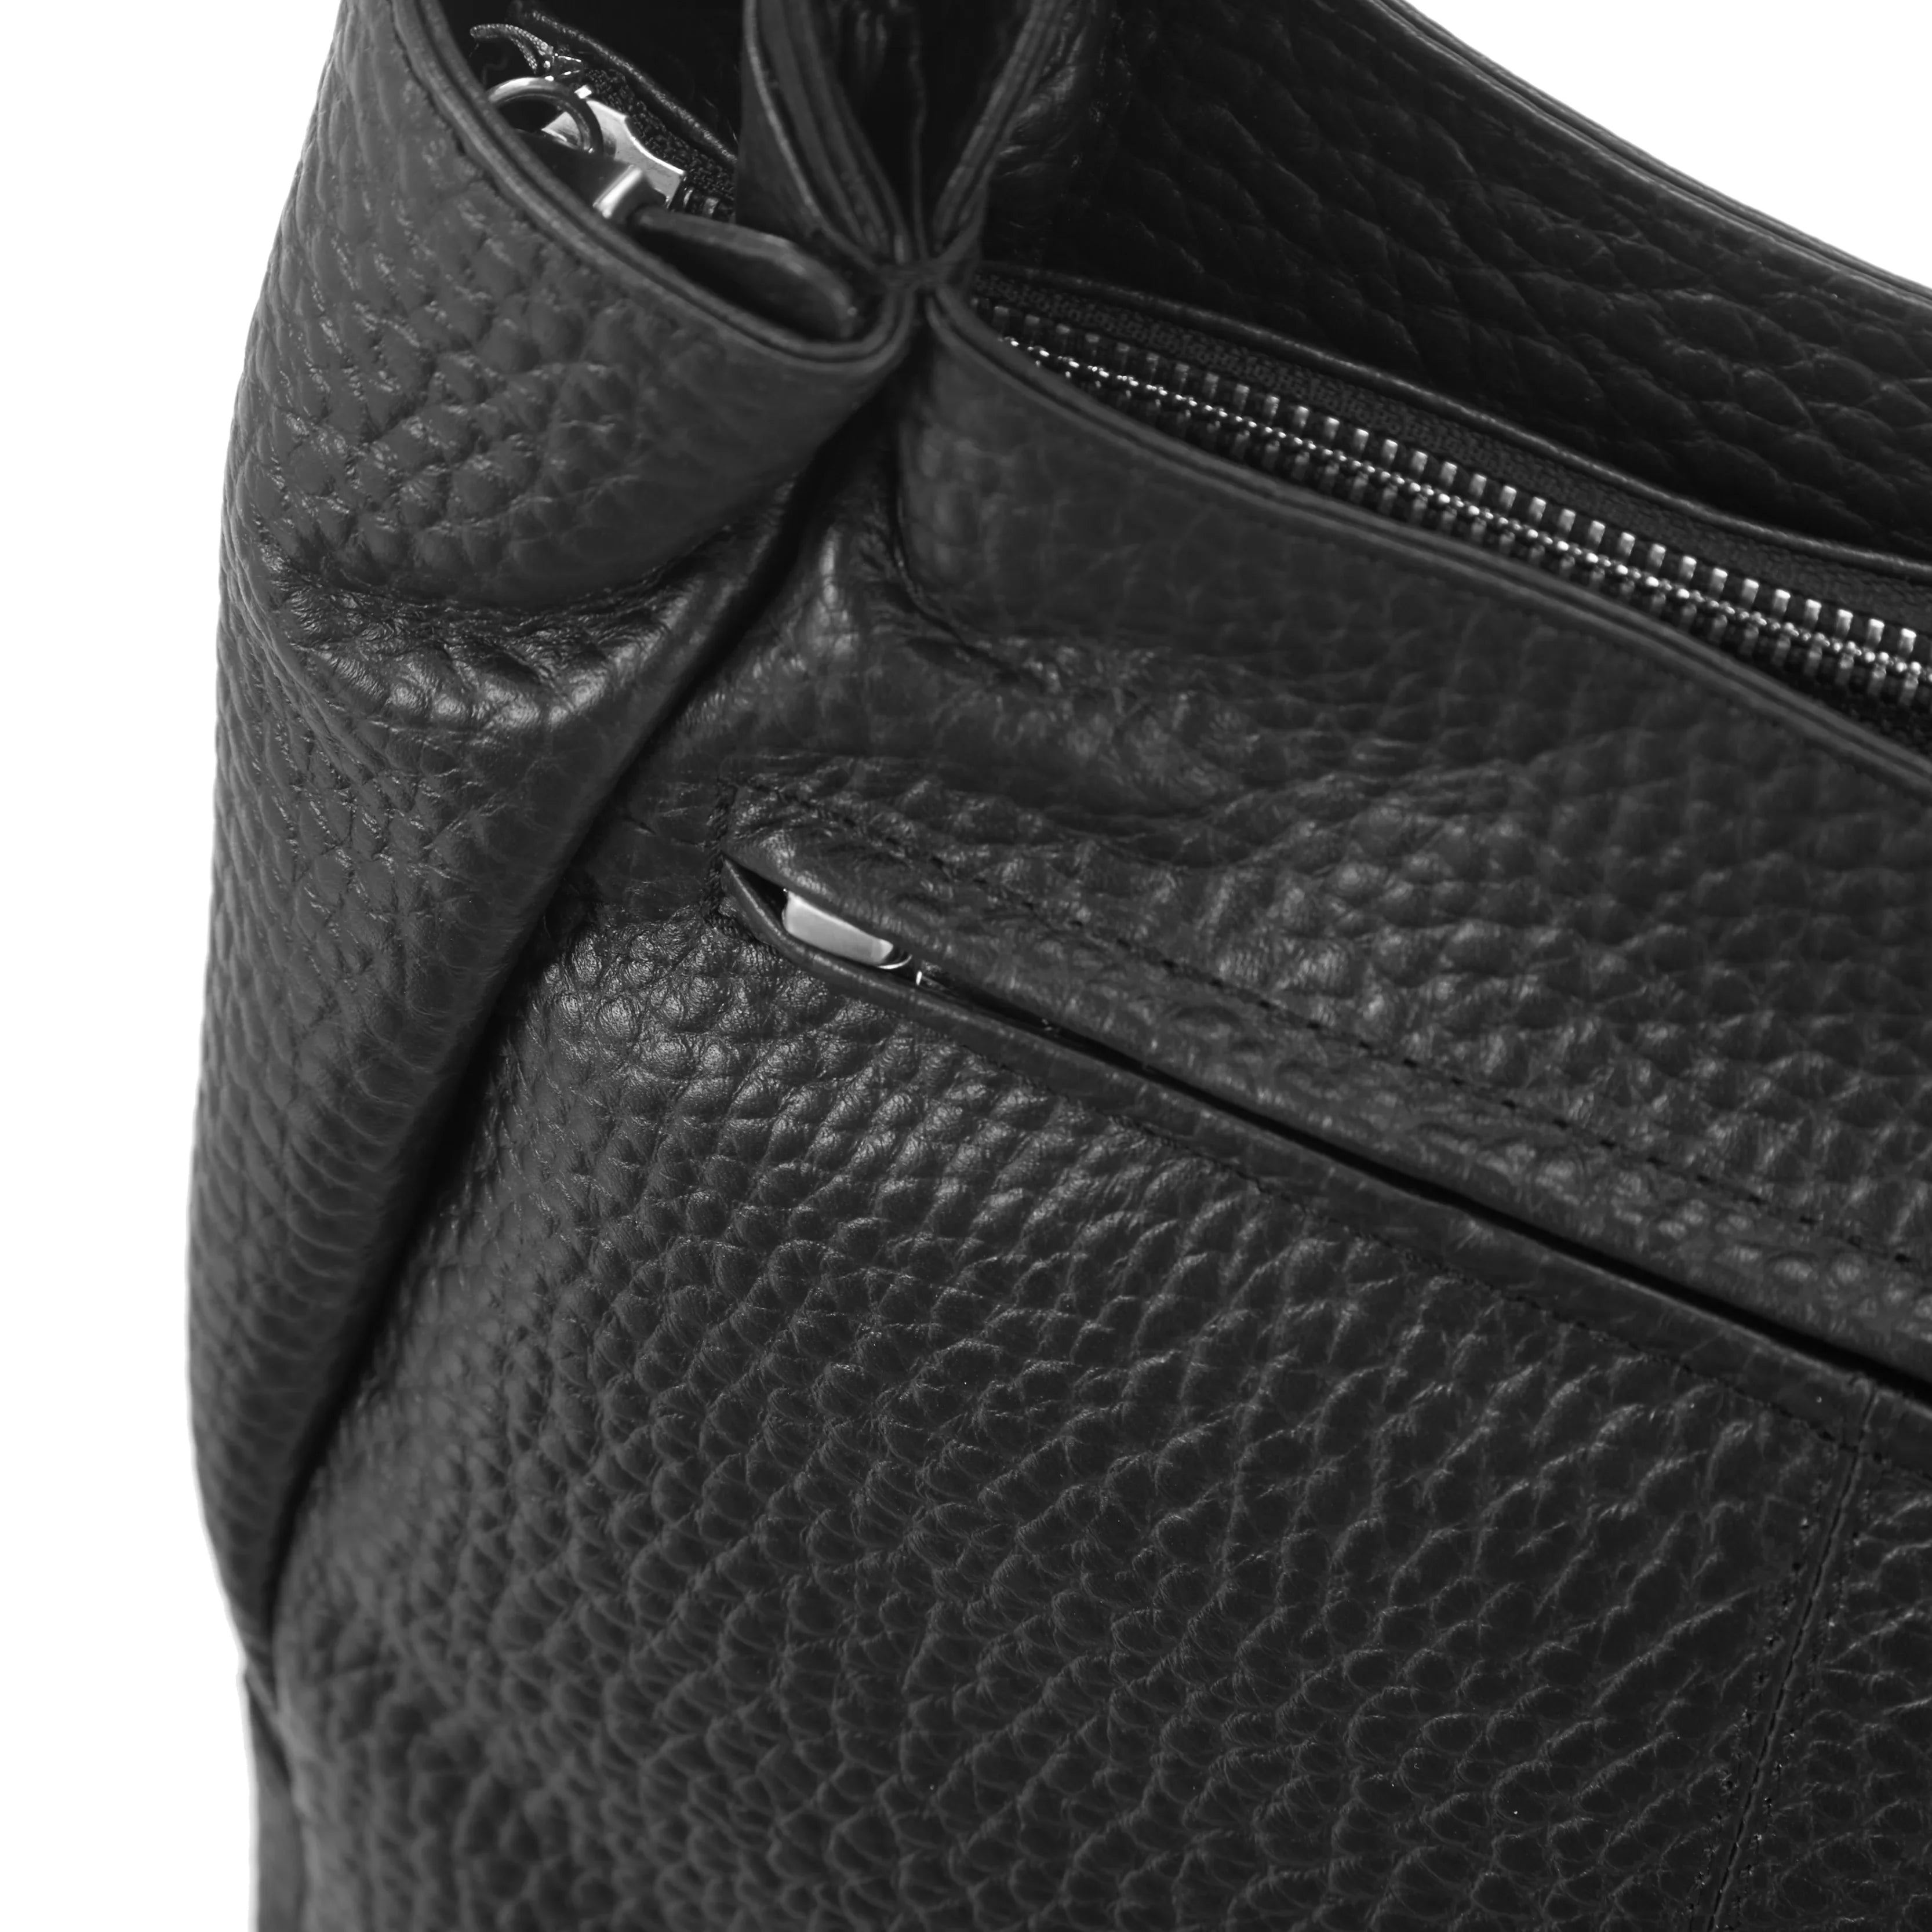 VOi-Design Hirsch Bessie shoulder bag 28 cm - Black